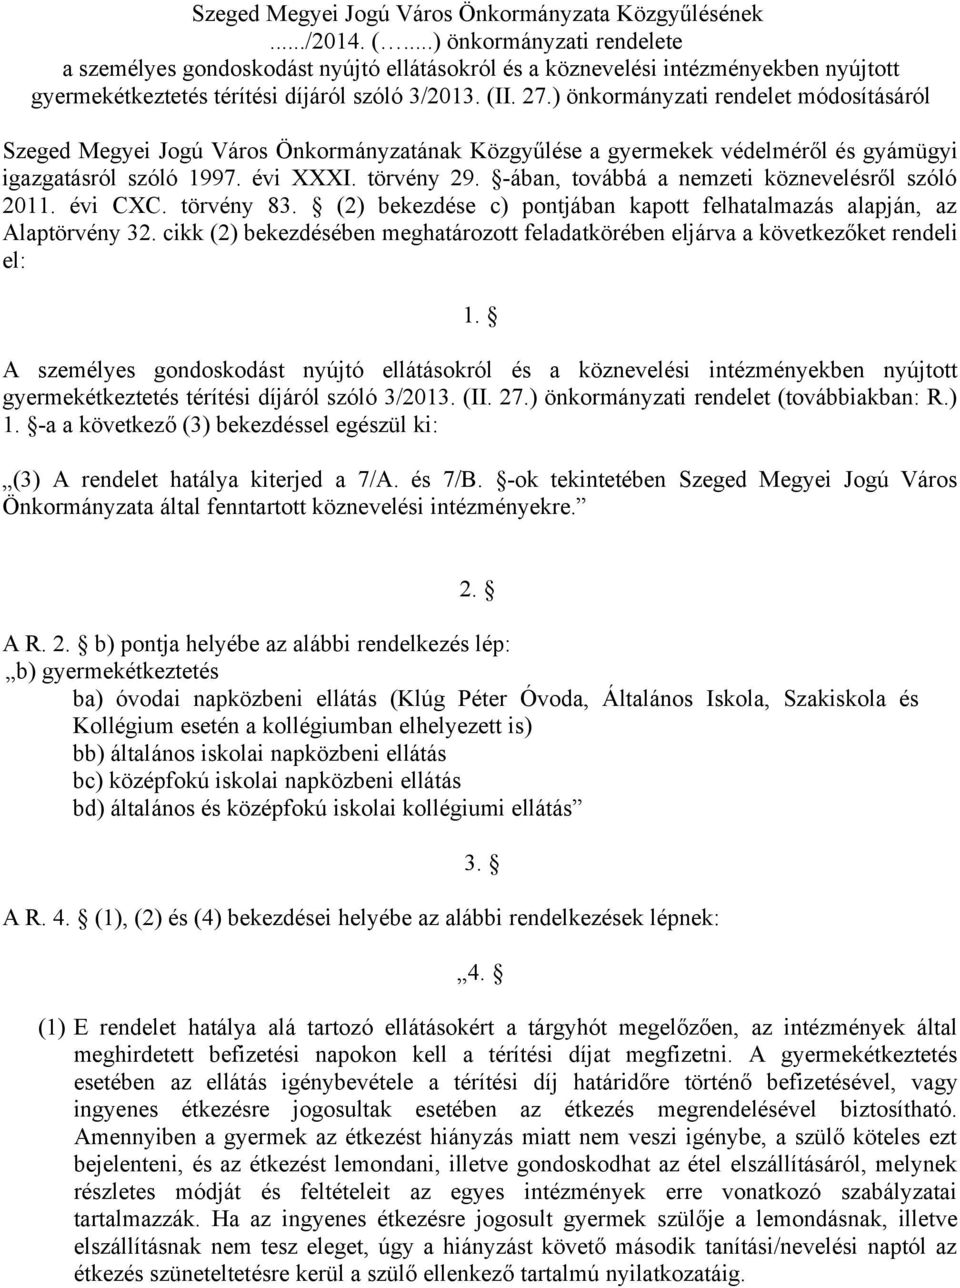 ) önkormányzati rendelet módosításáról Szeged Megyei Jogú Város Önkormányzatának Közgyűlése a gyermekek védelméről és gyámügyi igazgatásról szóló 1997. évi XXXI. törvény 29.